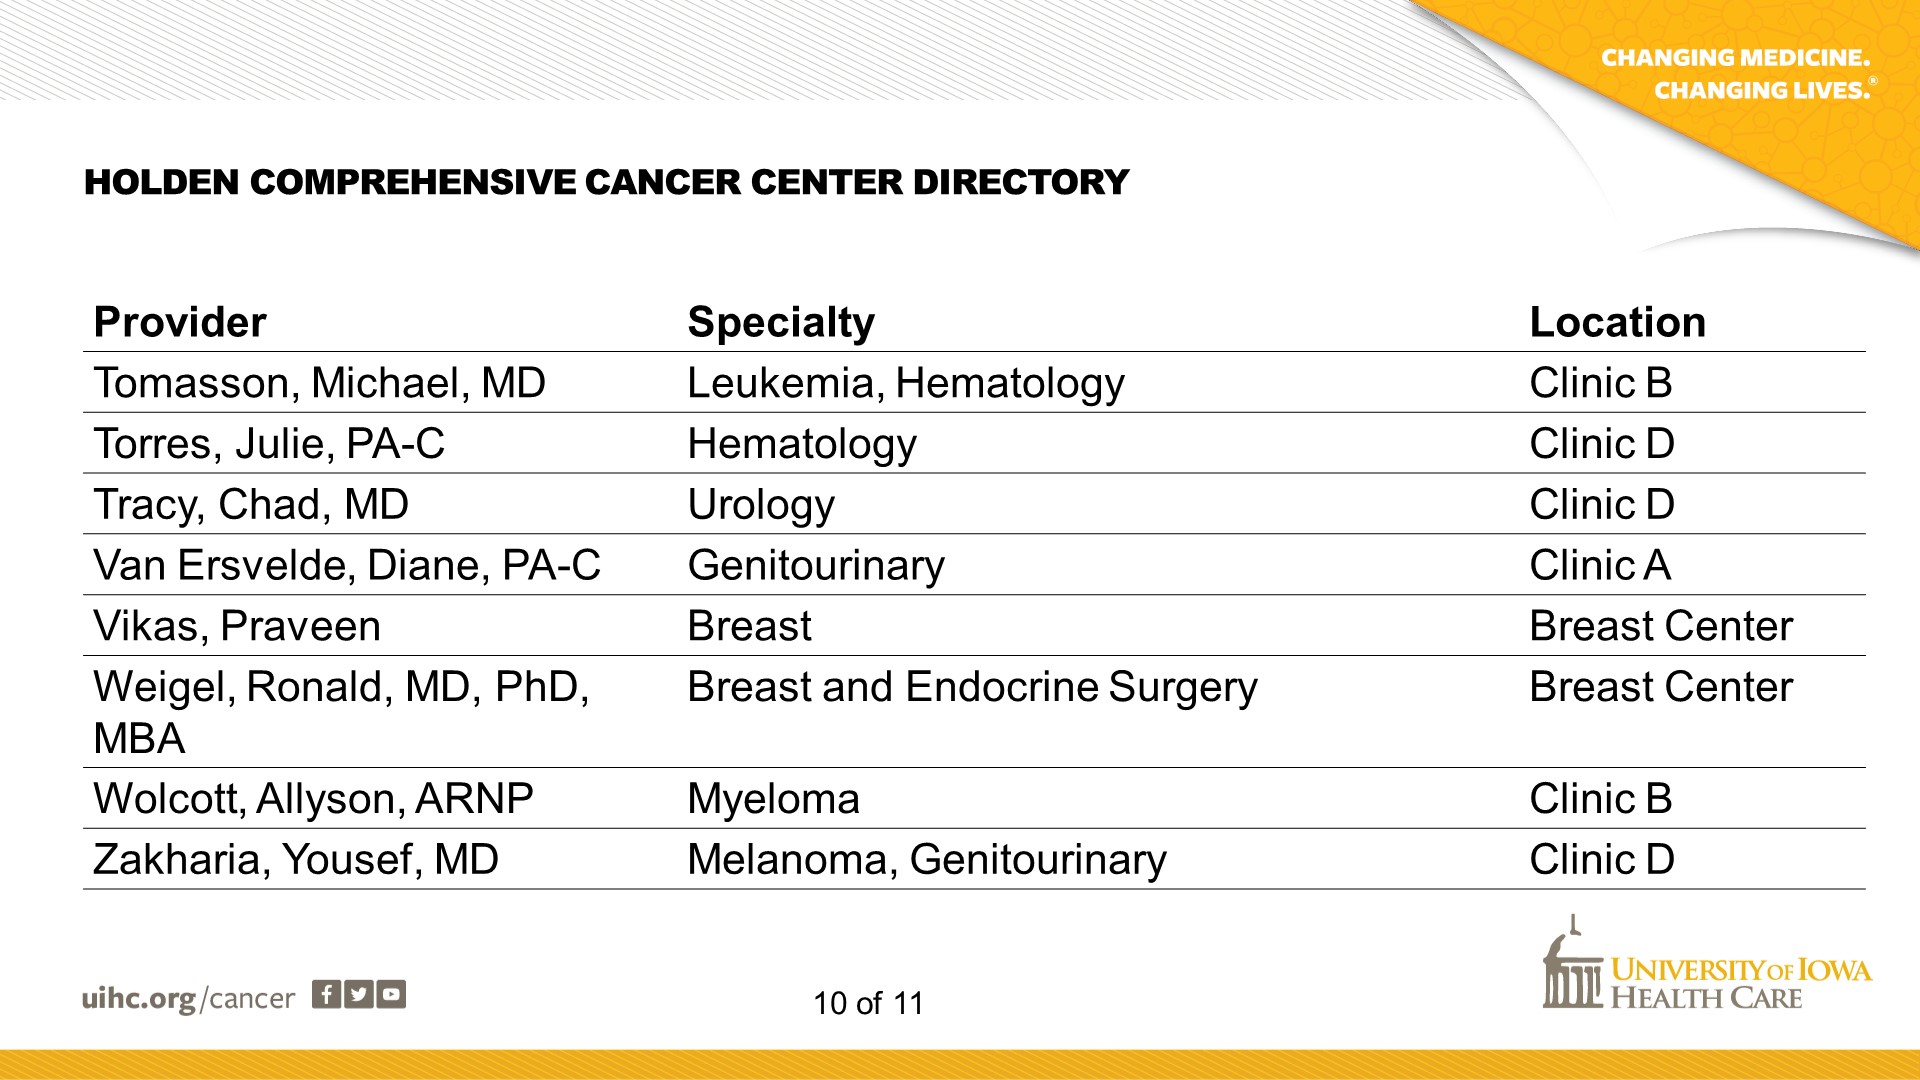 Cancer Center Directory - Slide 10